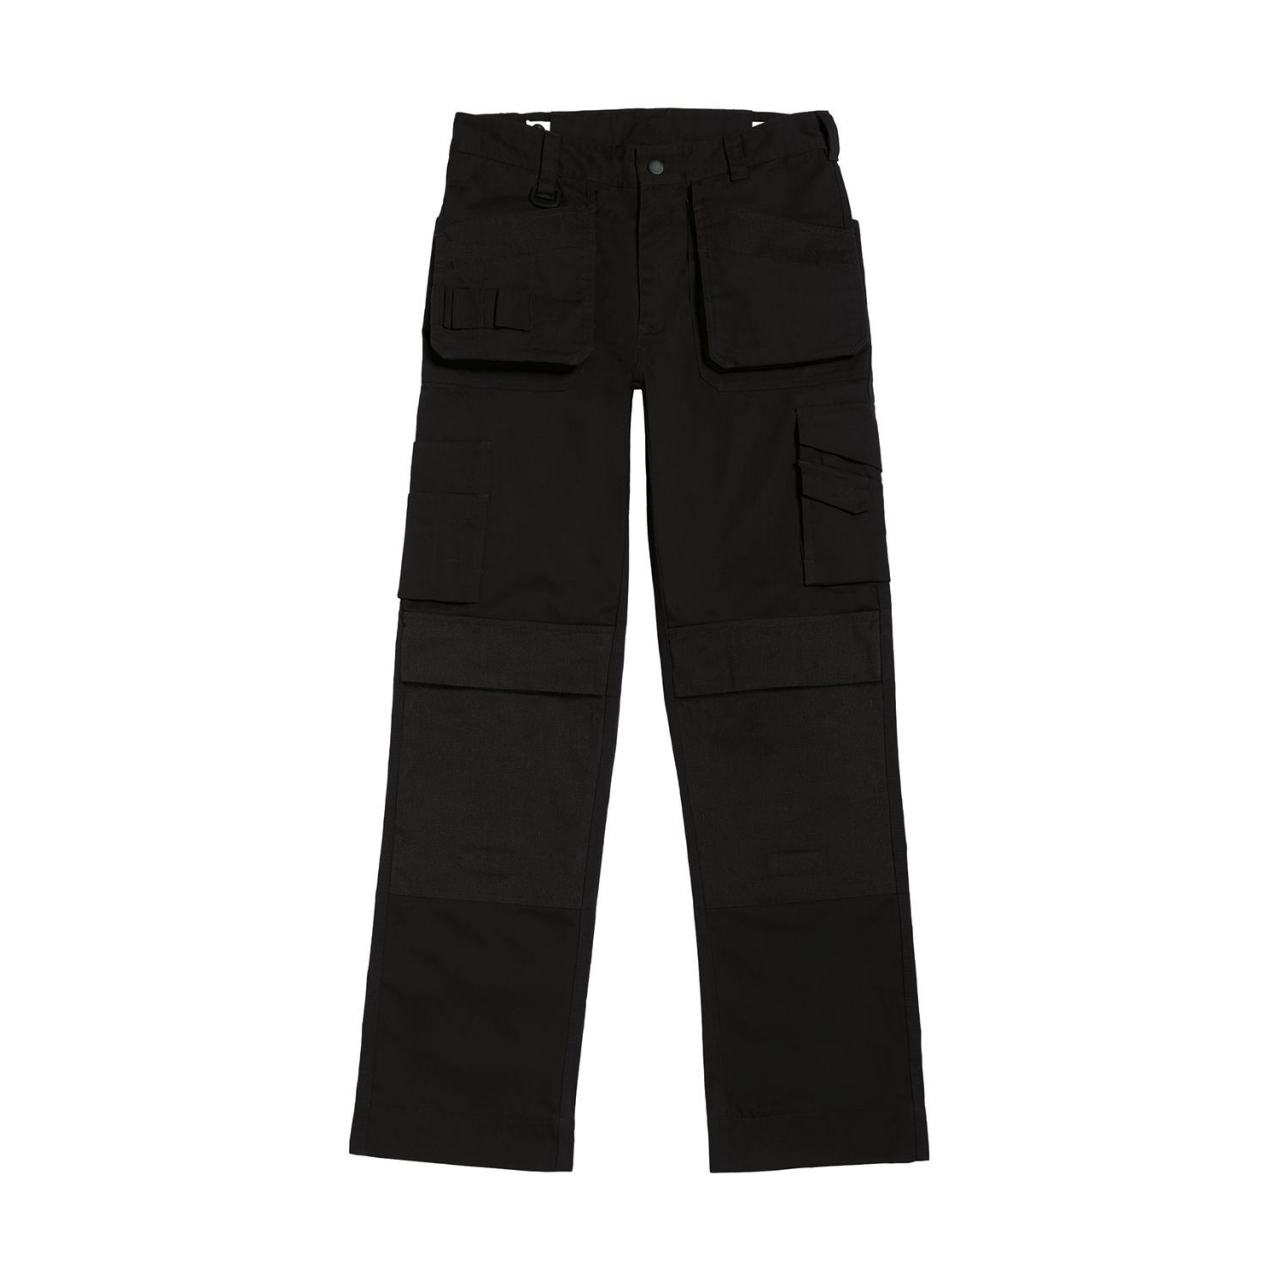 Kalhoty pracovní B&C Performance Pro - černé, 38